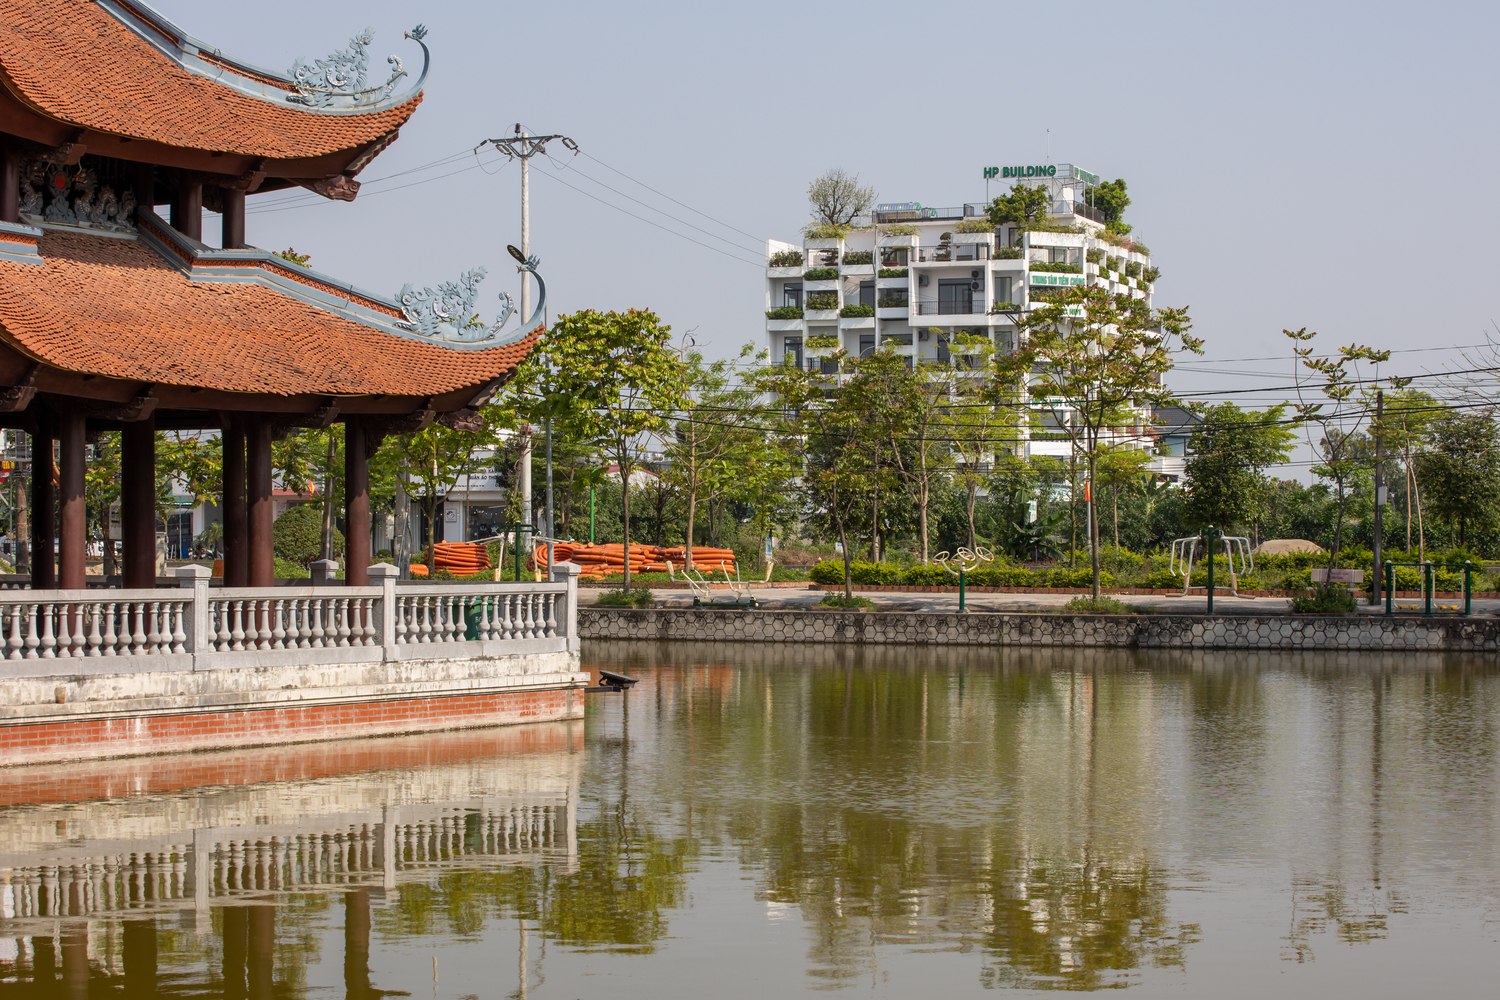 Bắc Ninh: Mãn nhãn với tòa nhà nằm ở phía Tây nhưng lúc nào cũng xanh mát - Ảnh 2.